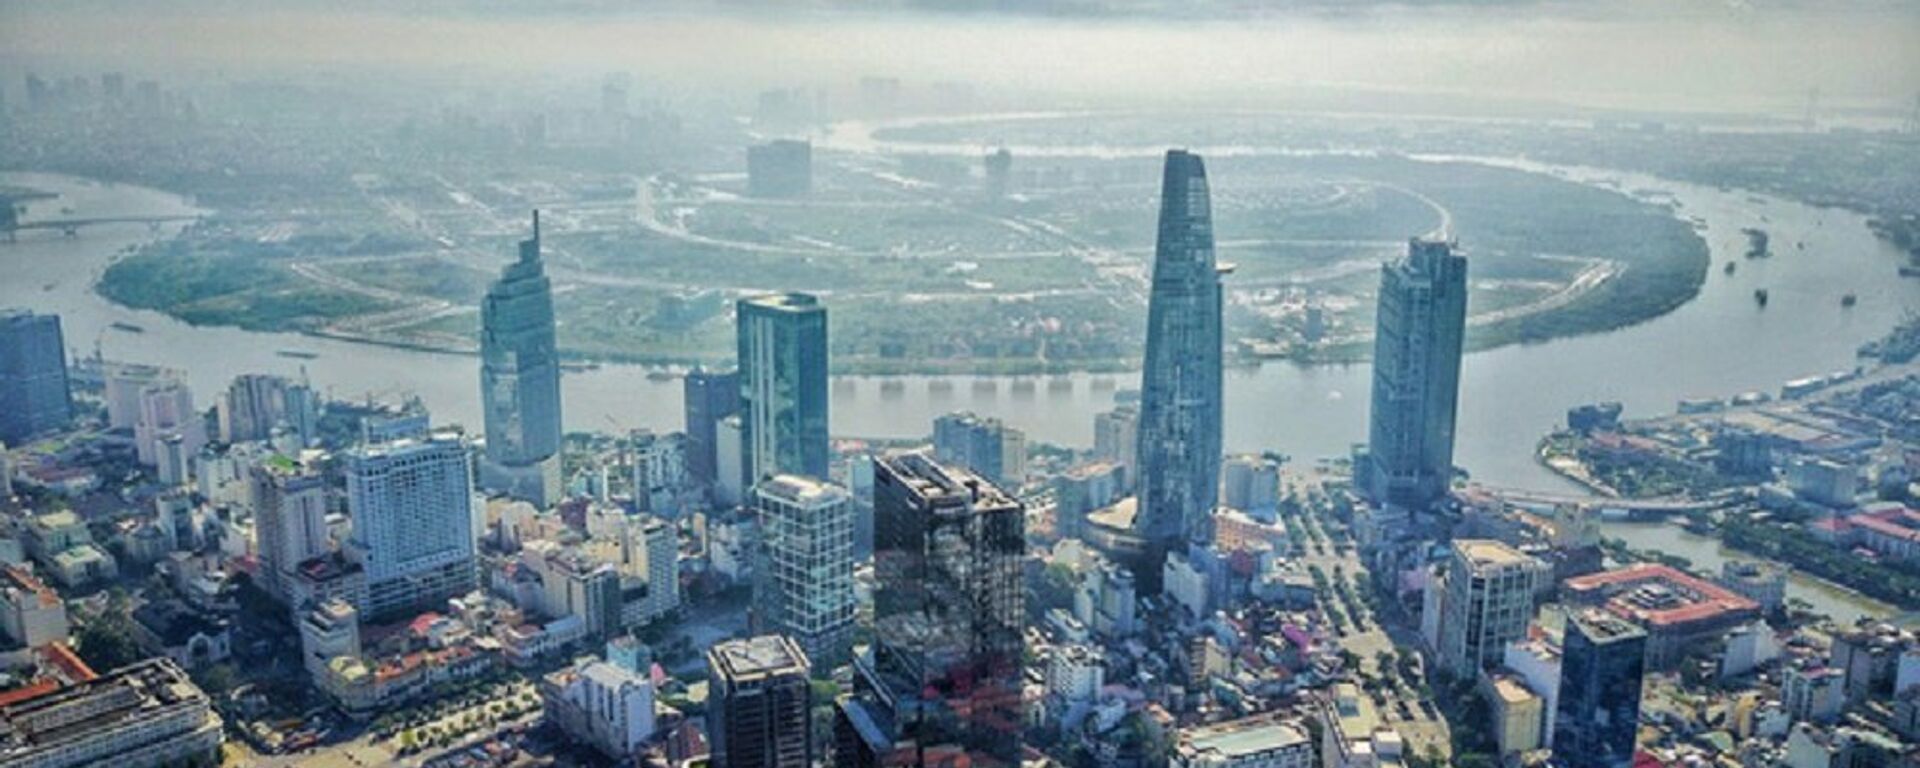 Đây là một trong 4 tòa nhà cao nhất TP.HCM hiện nay - Sputnik Việt Nam, 1920, 23.05.2018